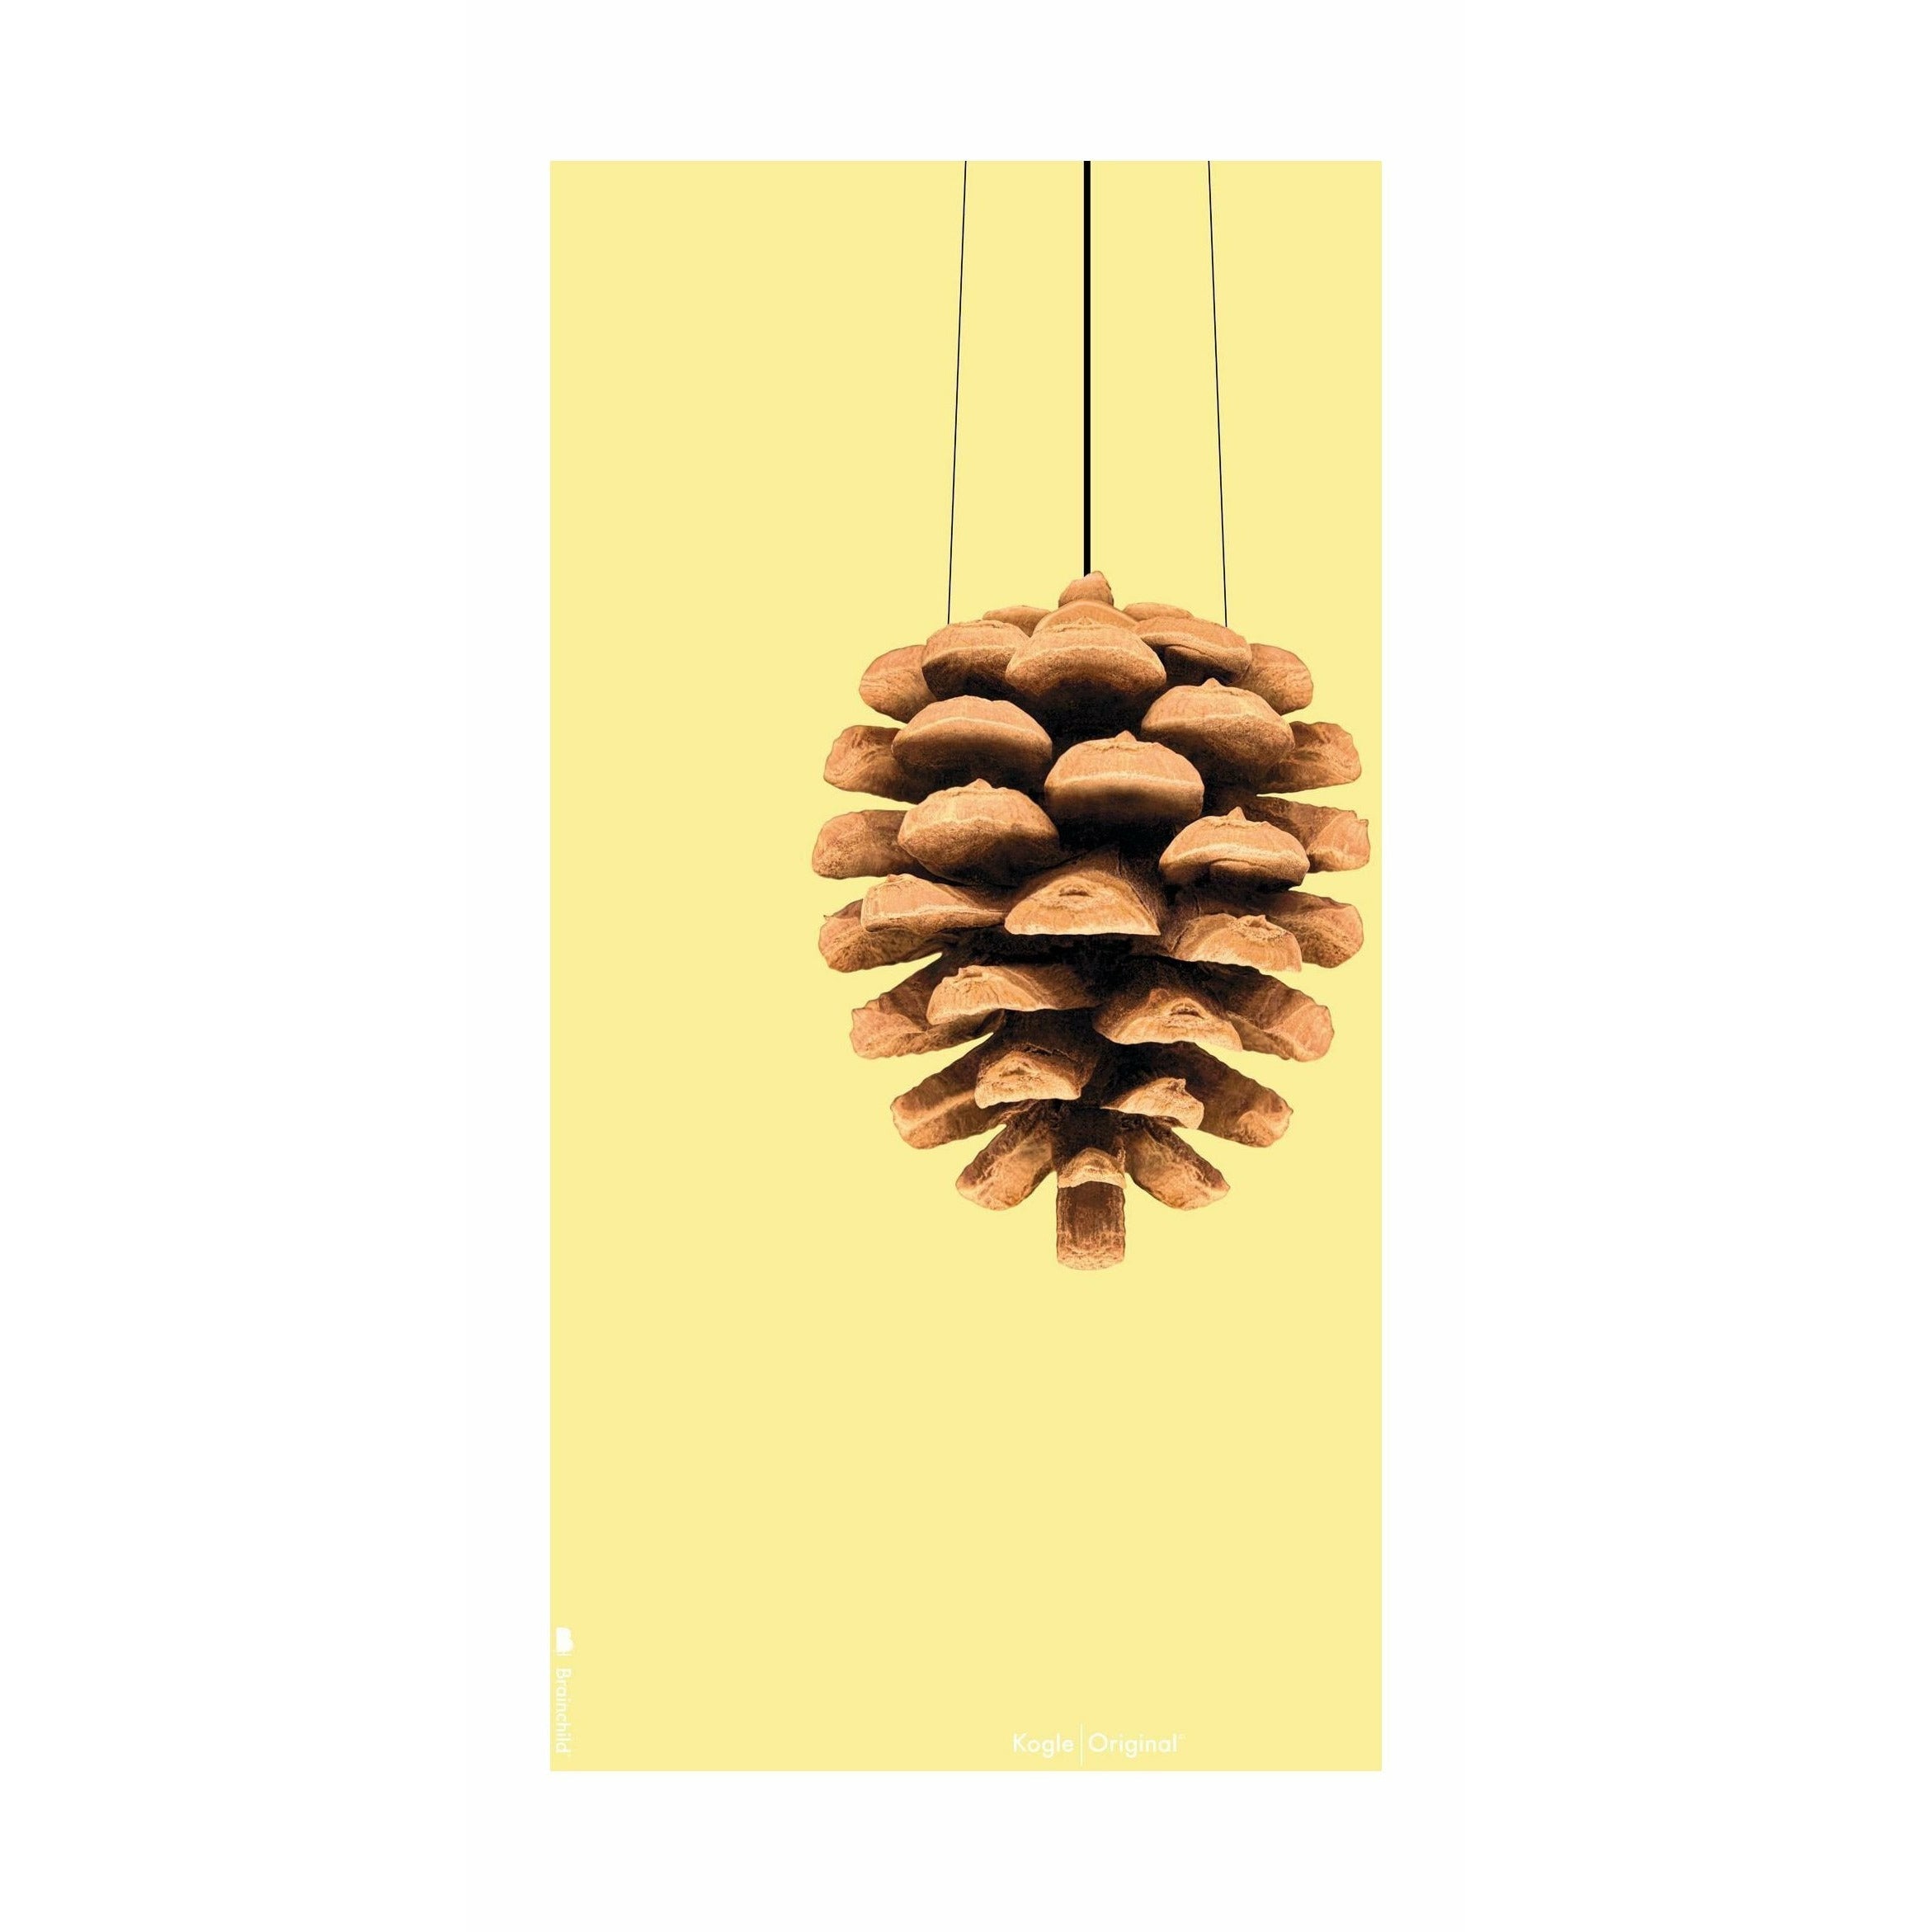 brainchild Pine Cone Classic Poster zonder frame 70 x100 cm, gele achtergrond